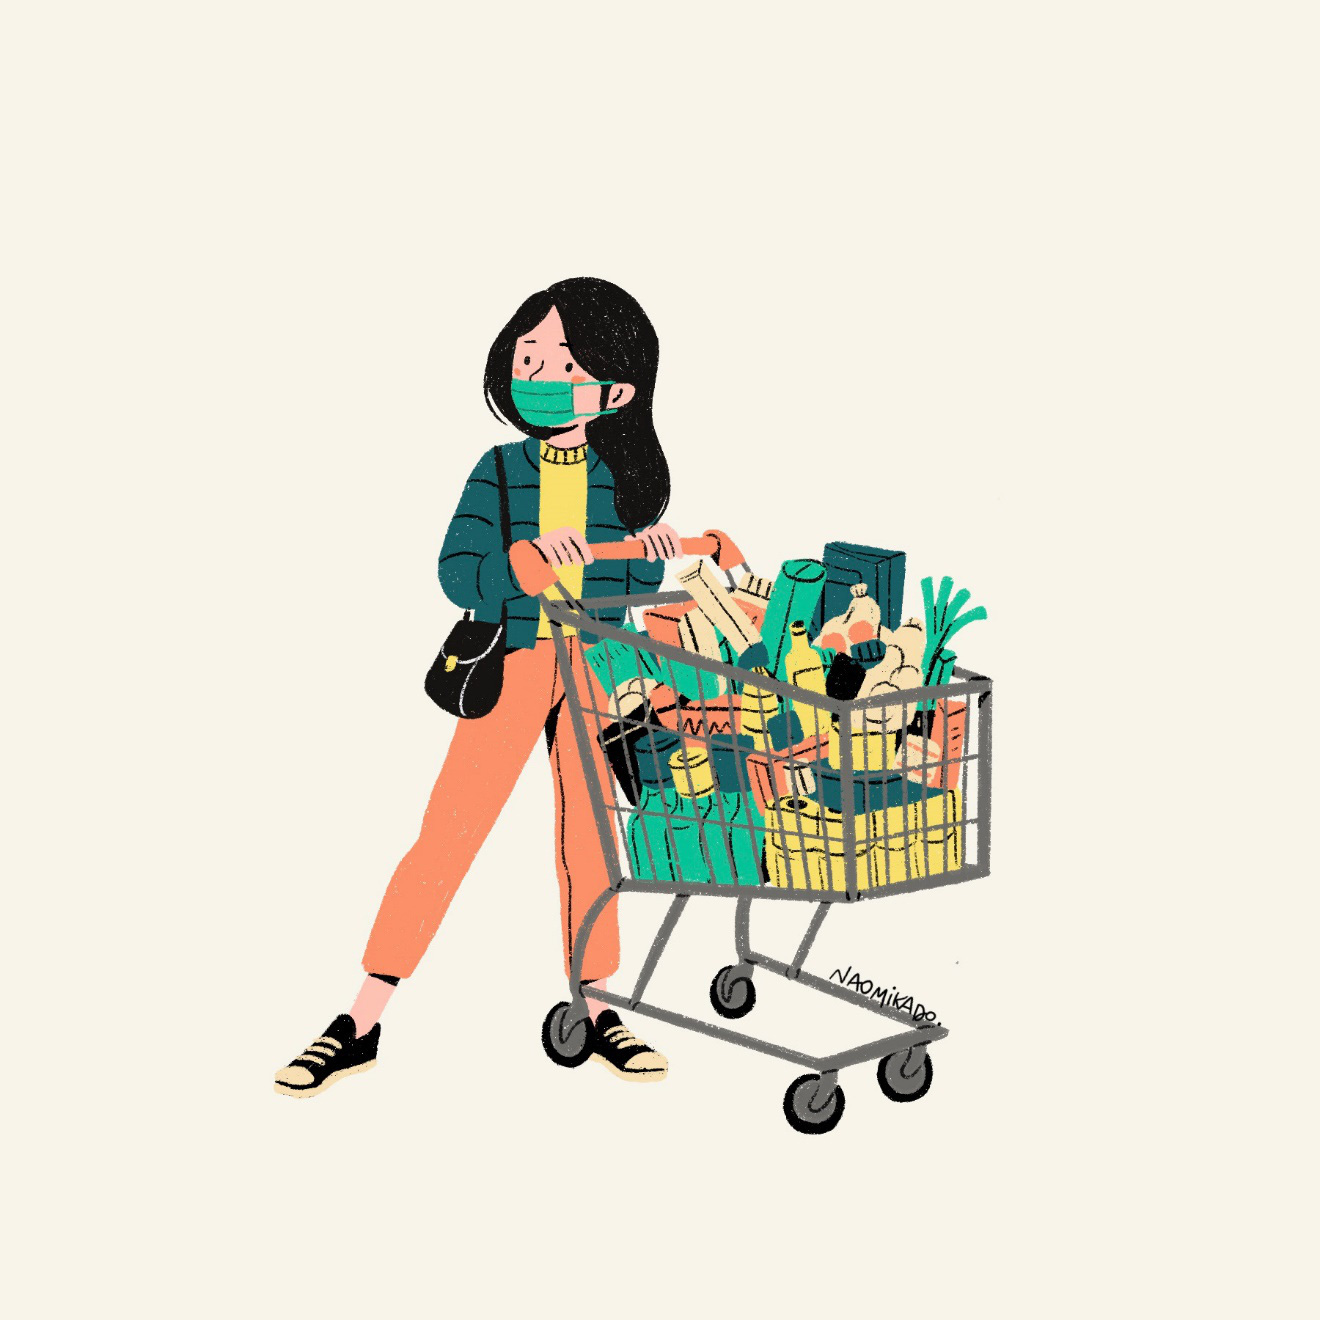 Muôn chuyện “dở khóc dở cười” khi các mẹ shopping online - Ảnh 2.